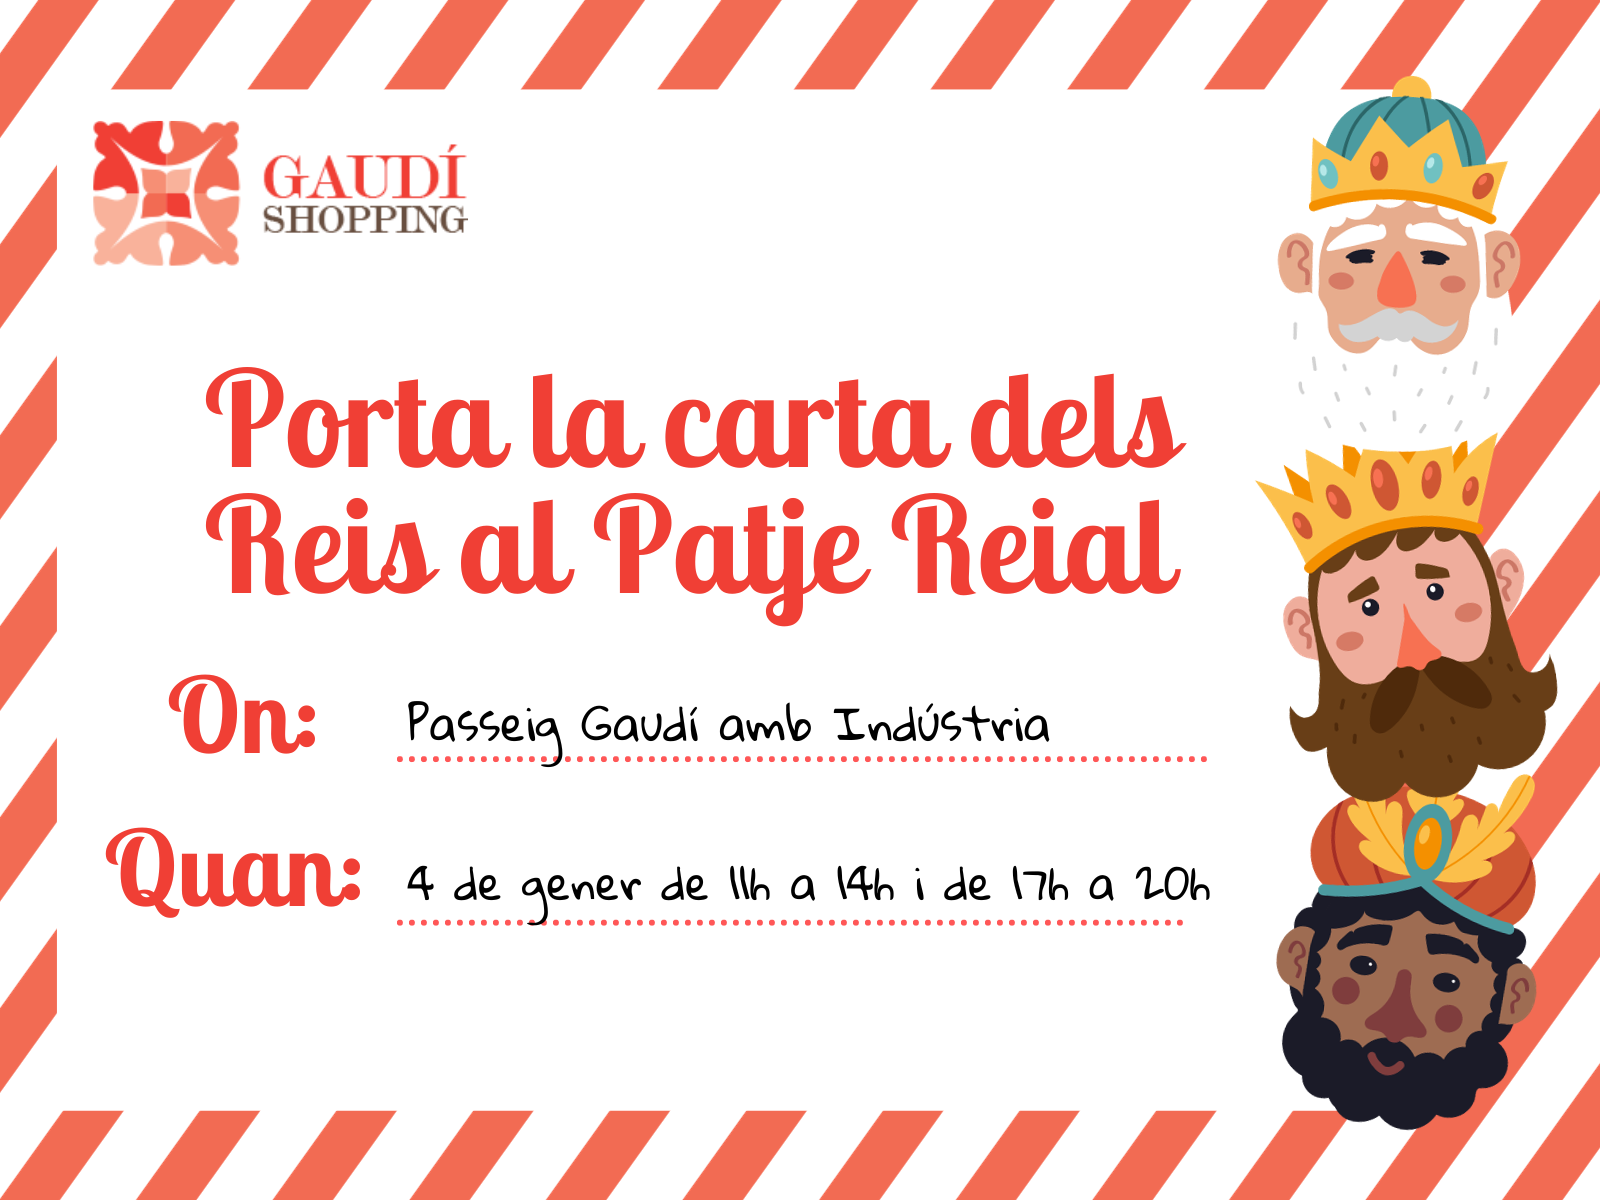 Entrega la carta de los Reyes al Paje Real de Gaudí Shopping